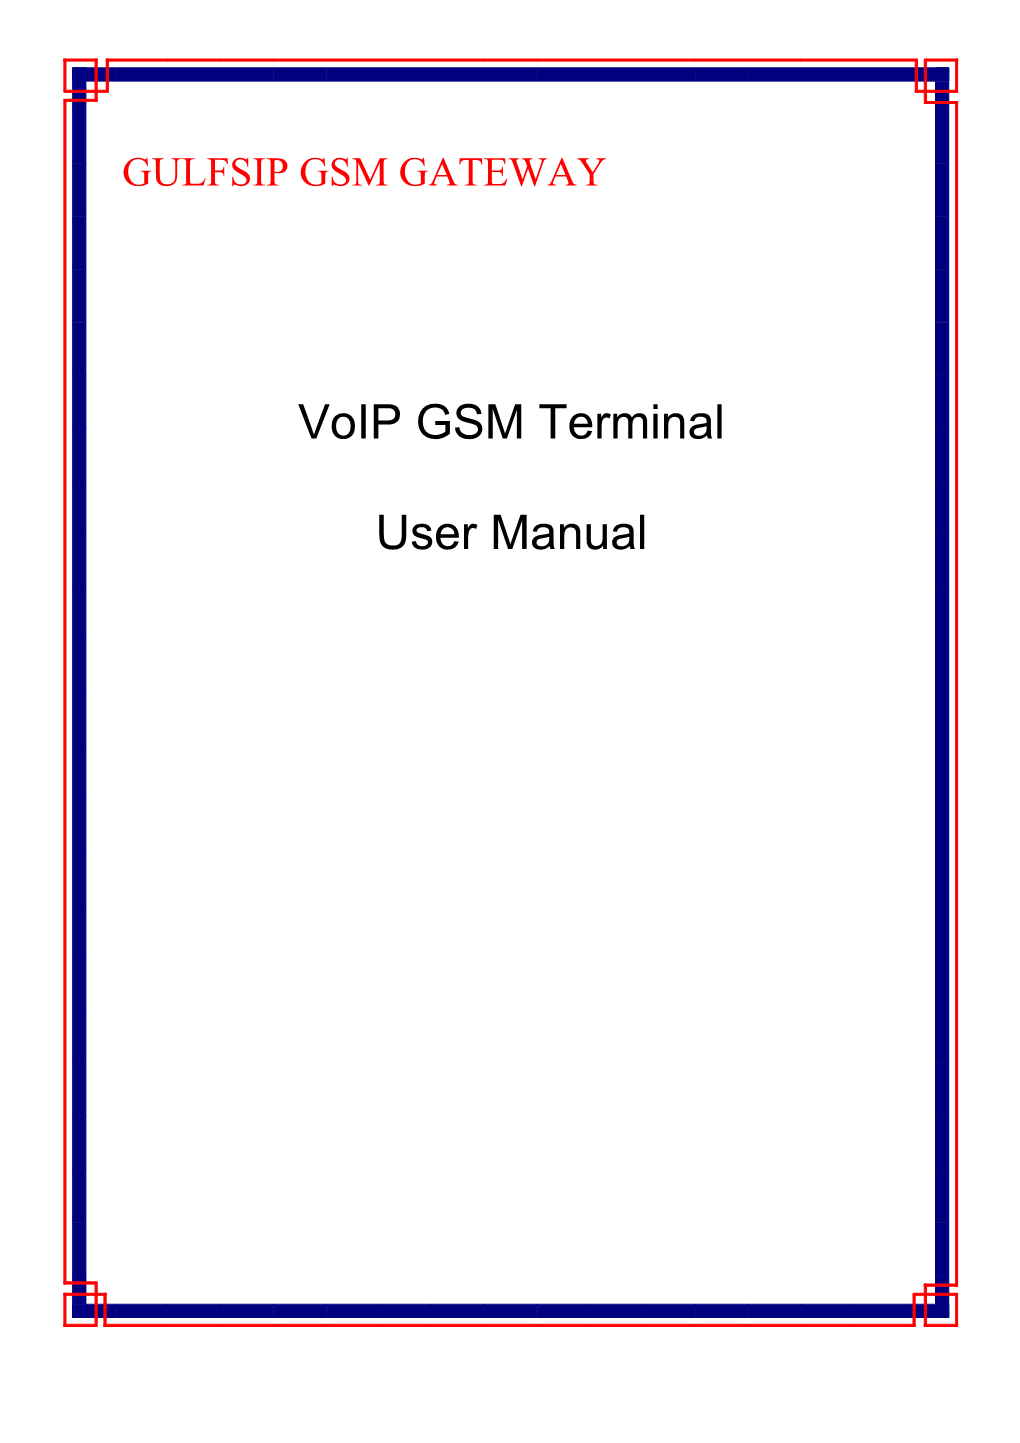 Voip GSM Terminal User Manual